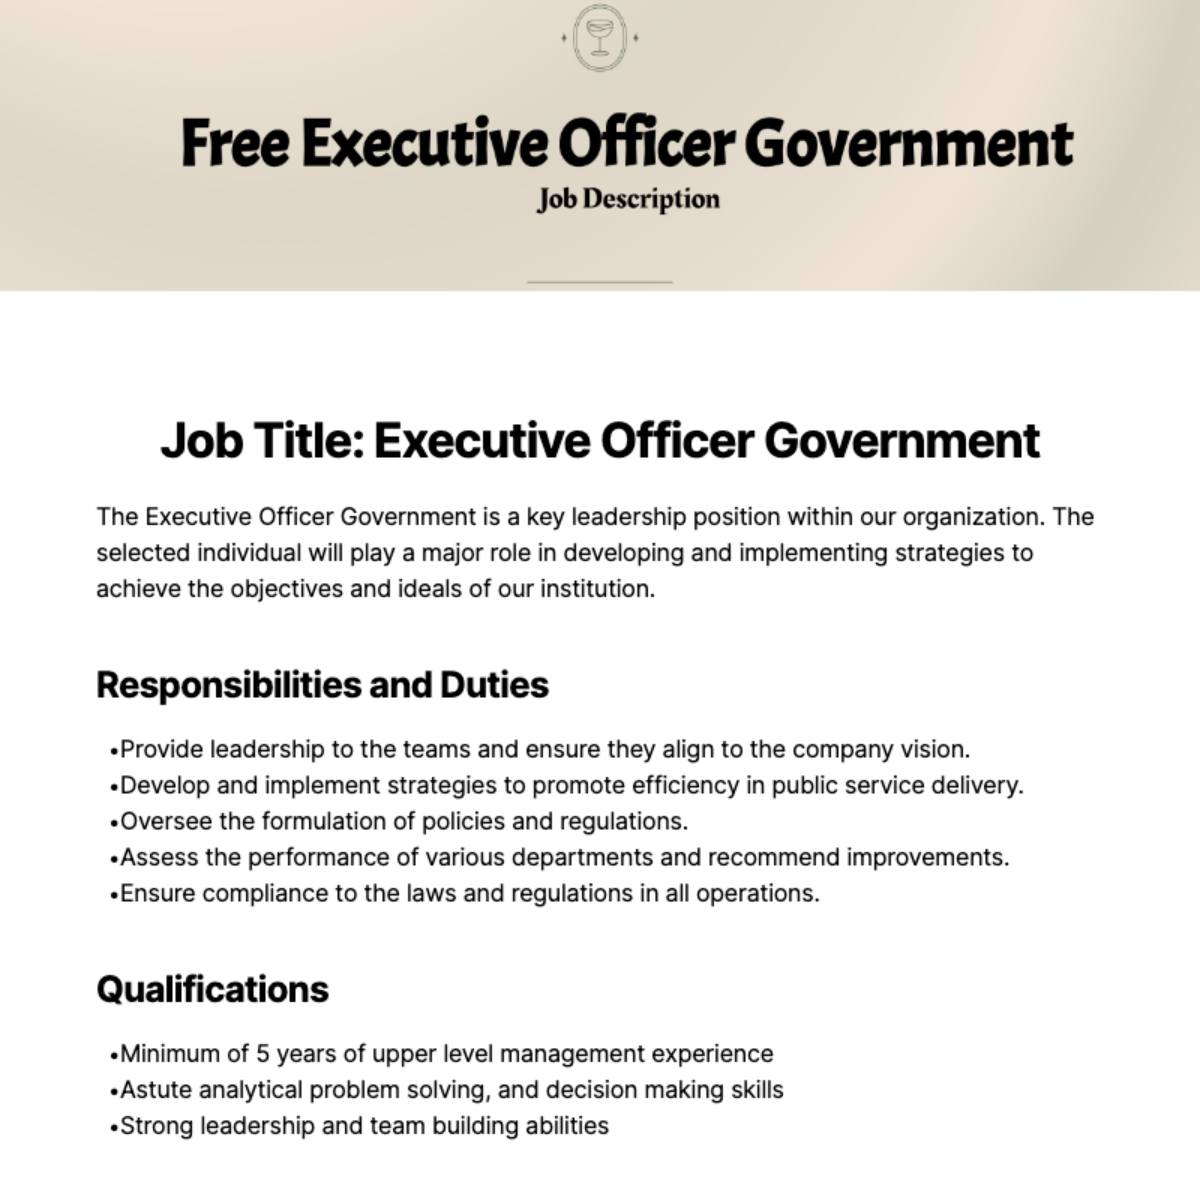 Executive Officer Government Job Description Template